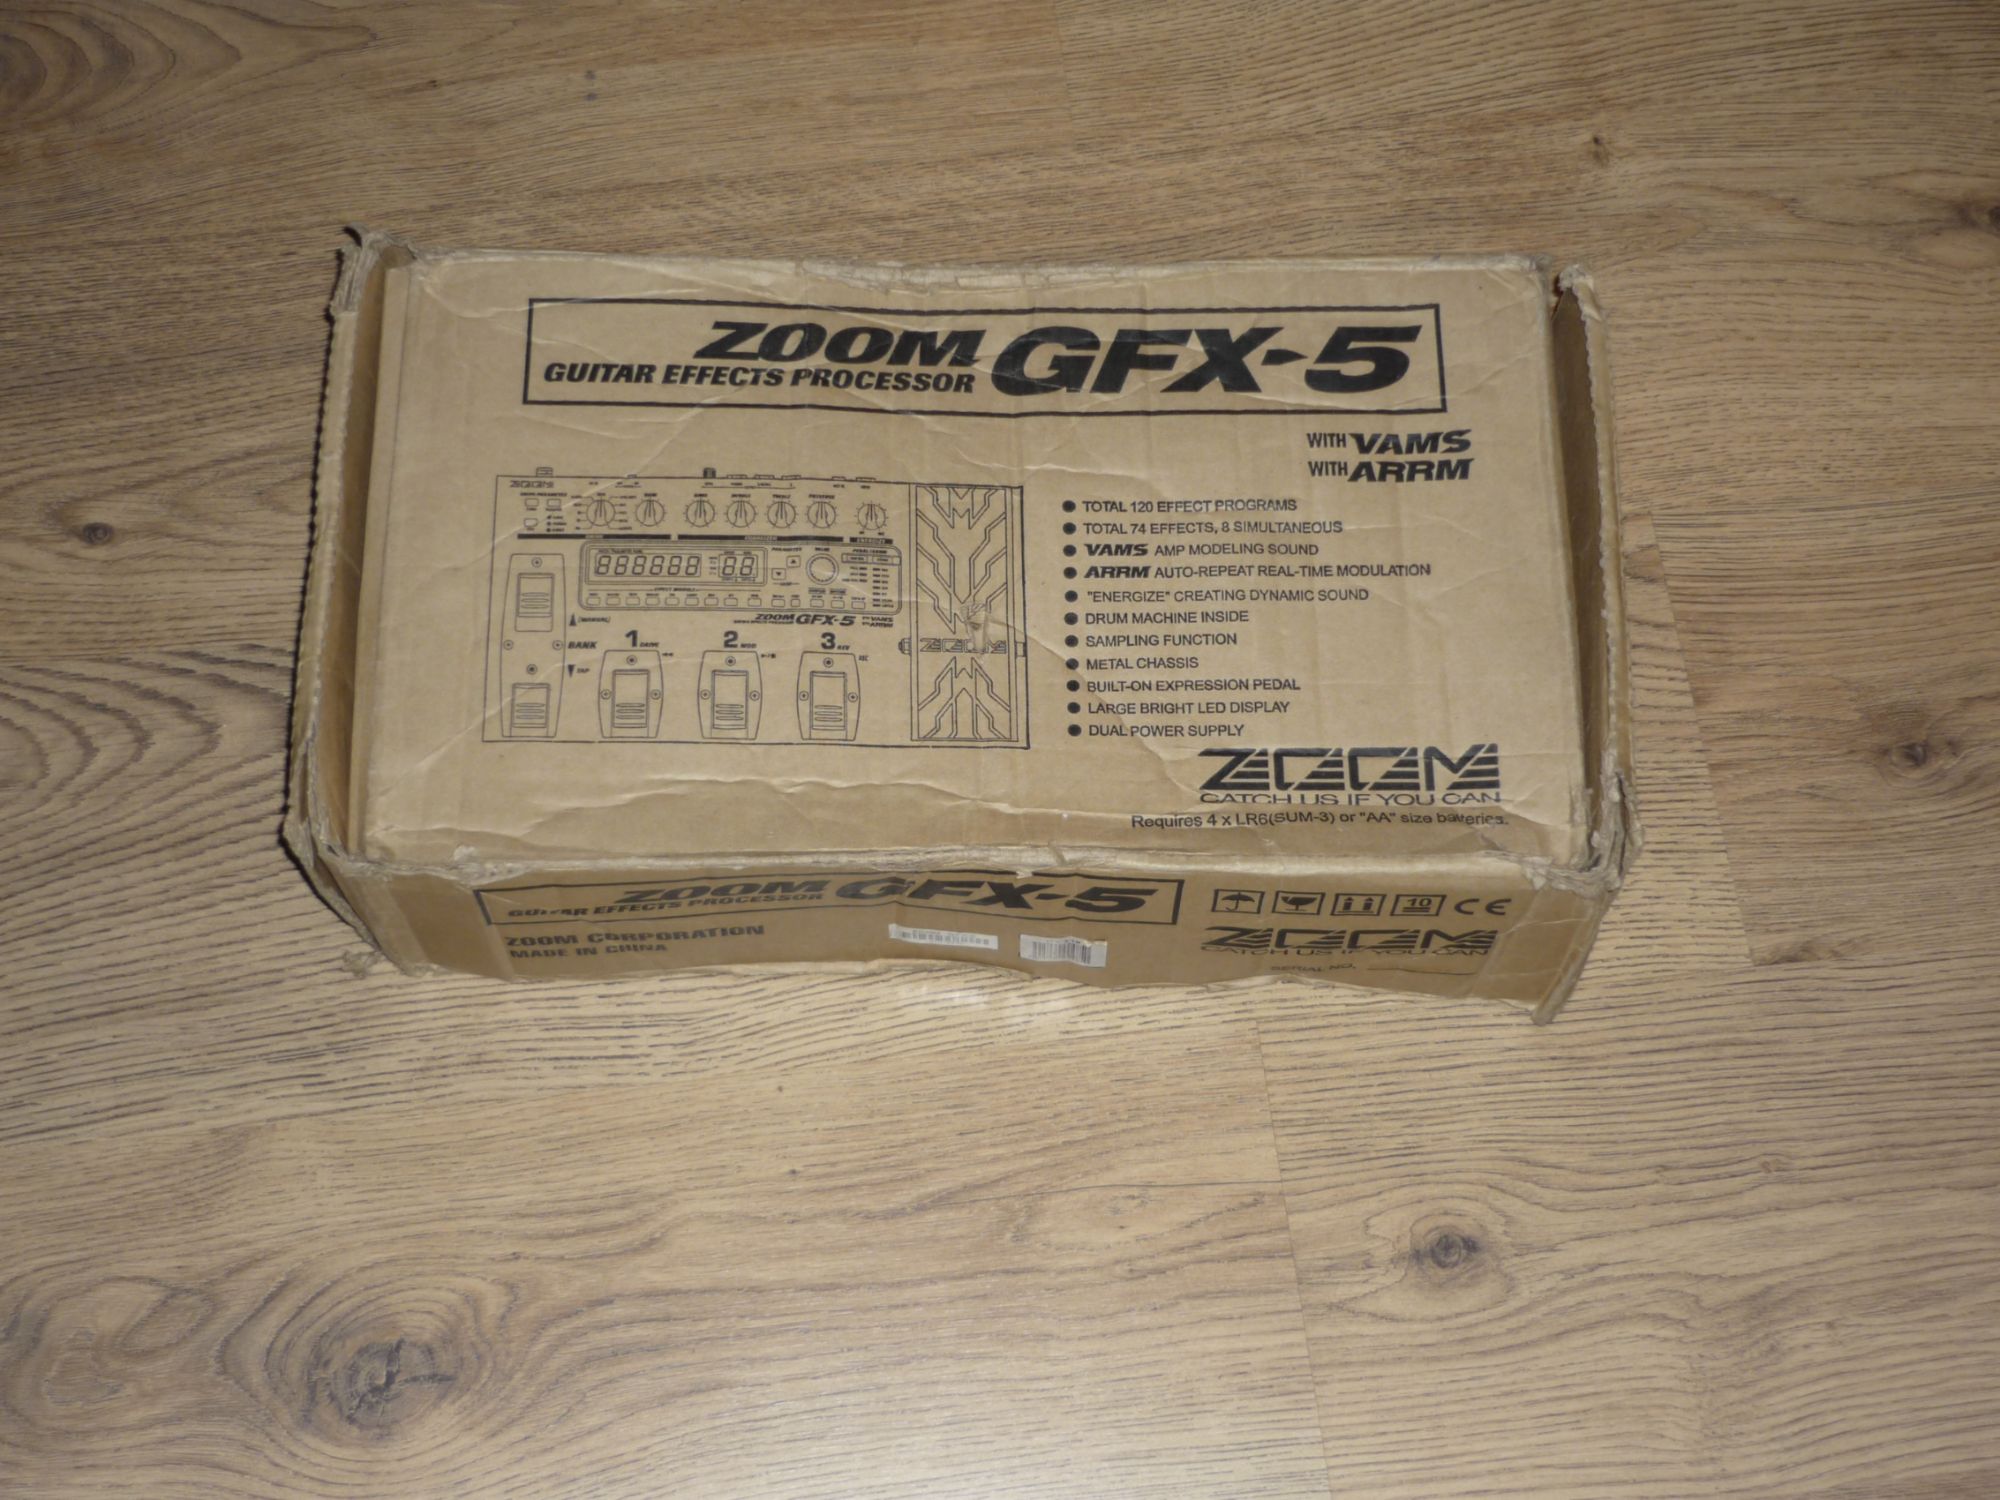 Pédalier Multi-Effets - Zoom Gfx-5